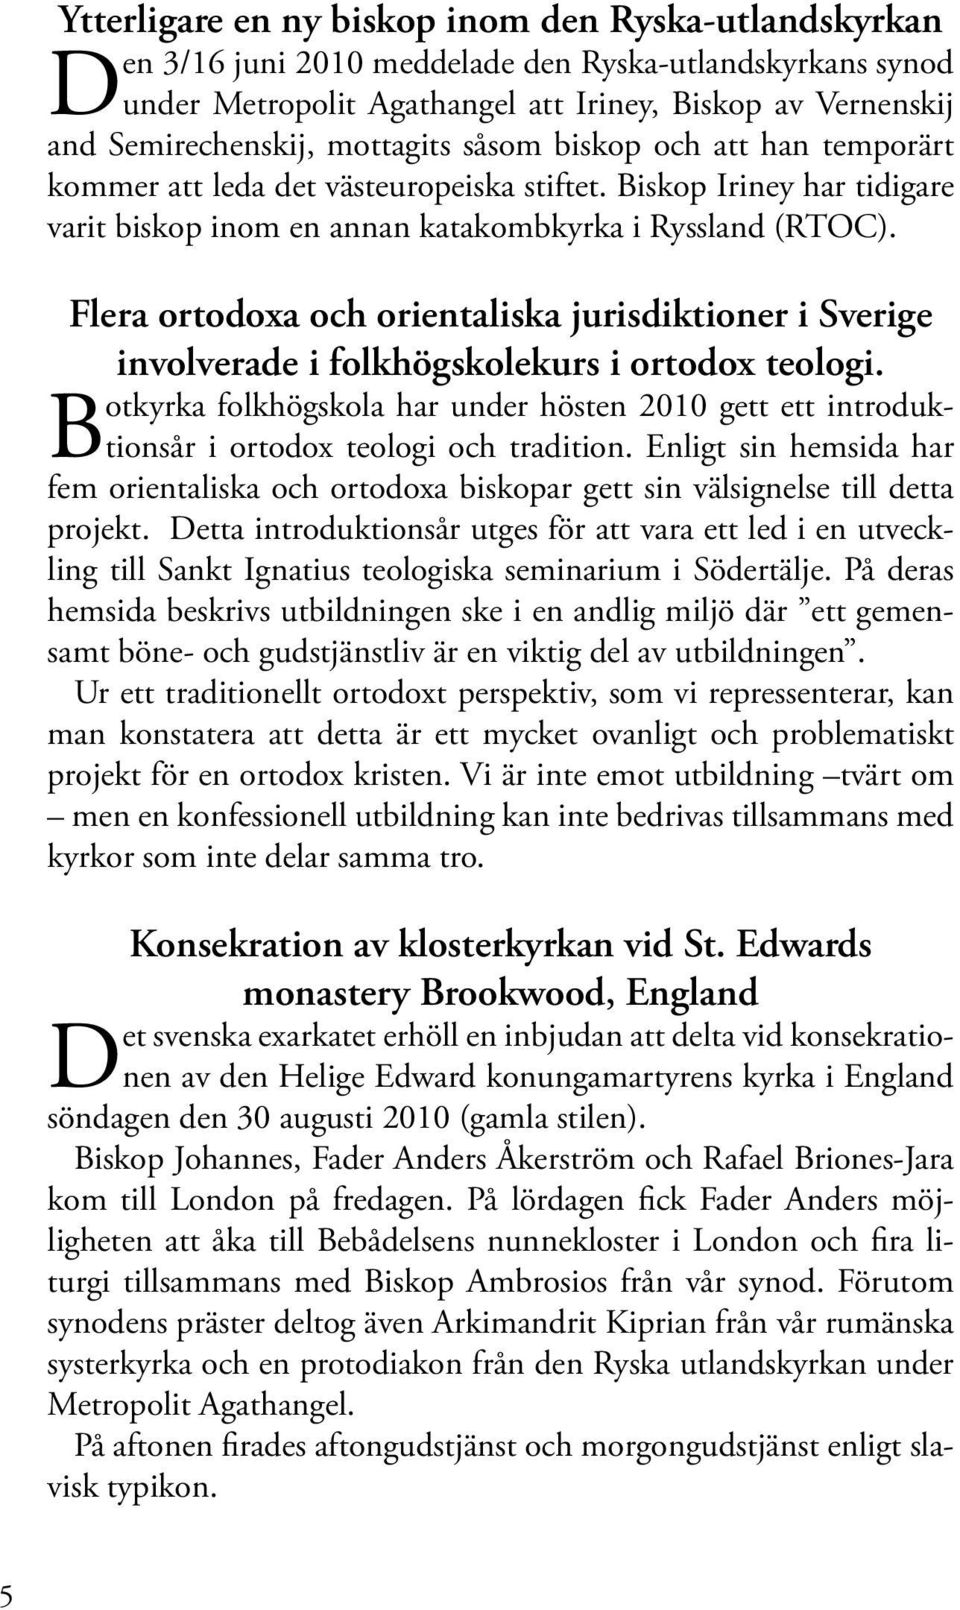 Flera ortodoxa och orientaliska jurisdiktioner i Sverige involverade i folkhögskolekurs i ortodox teologi.